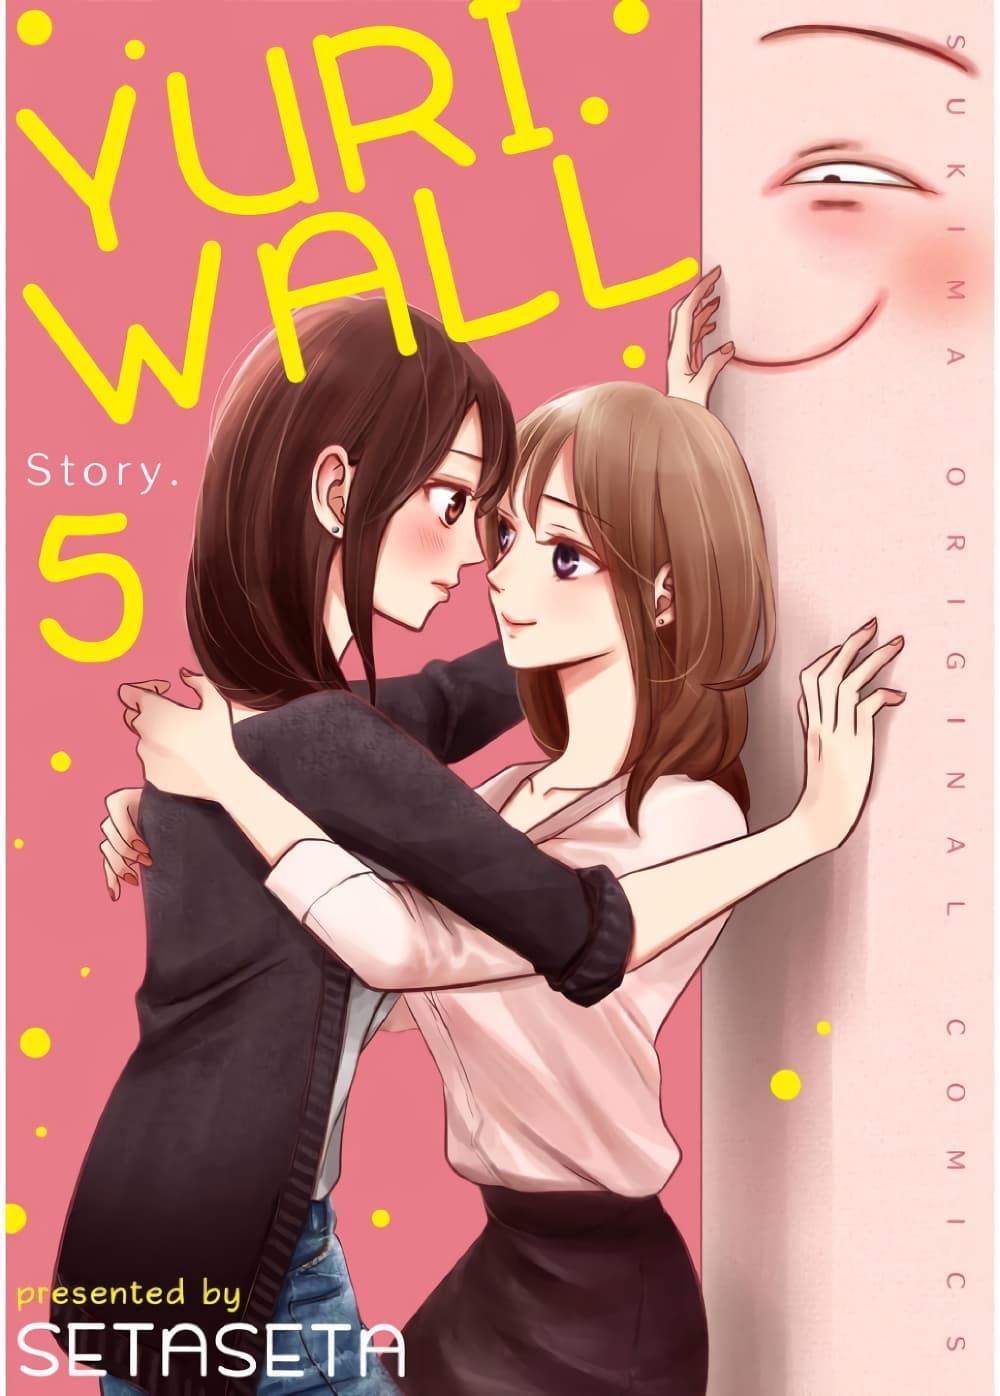 Yuri Wall 5 (1)